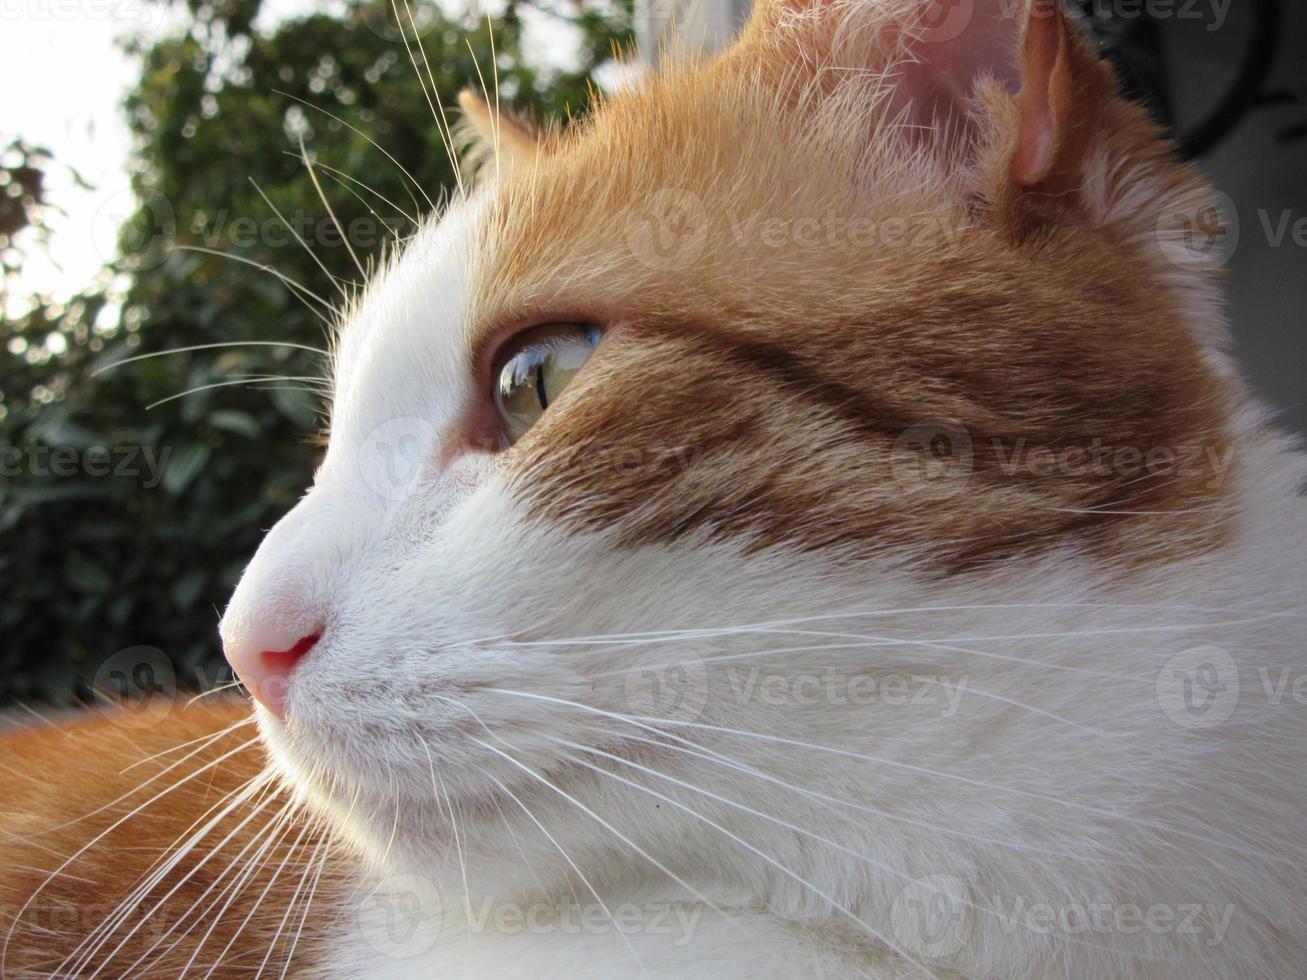 Perfil de gato atigrado naranja y blanco disfrutando del sol foto